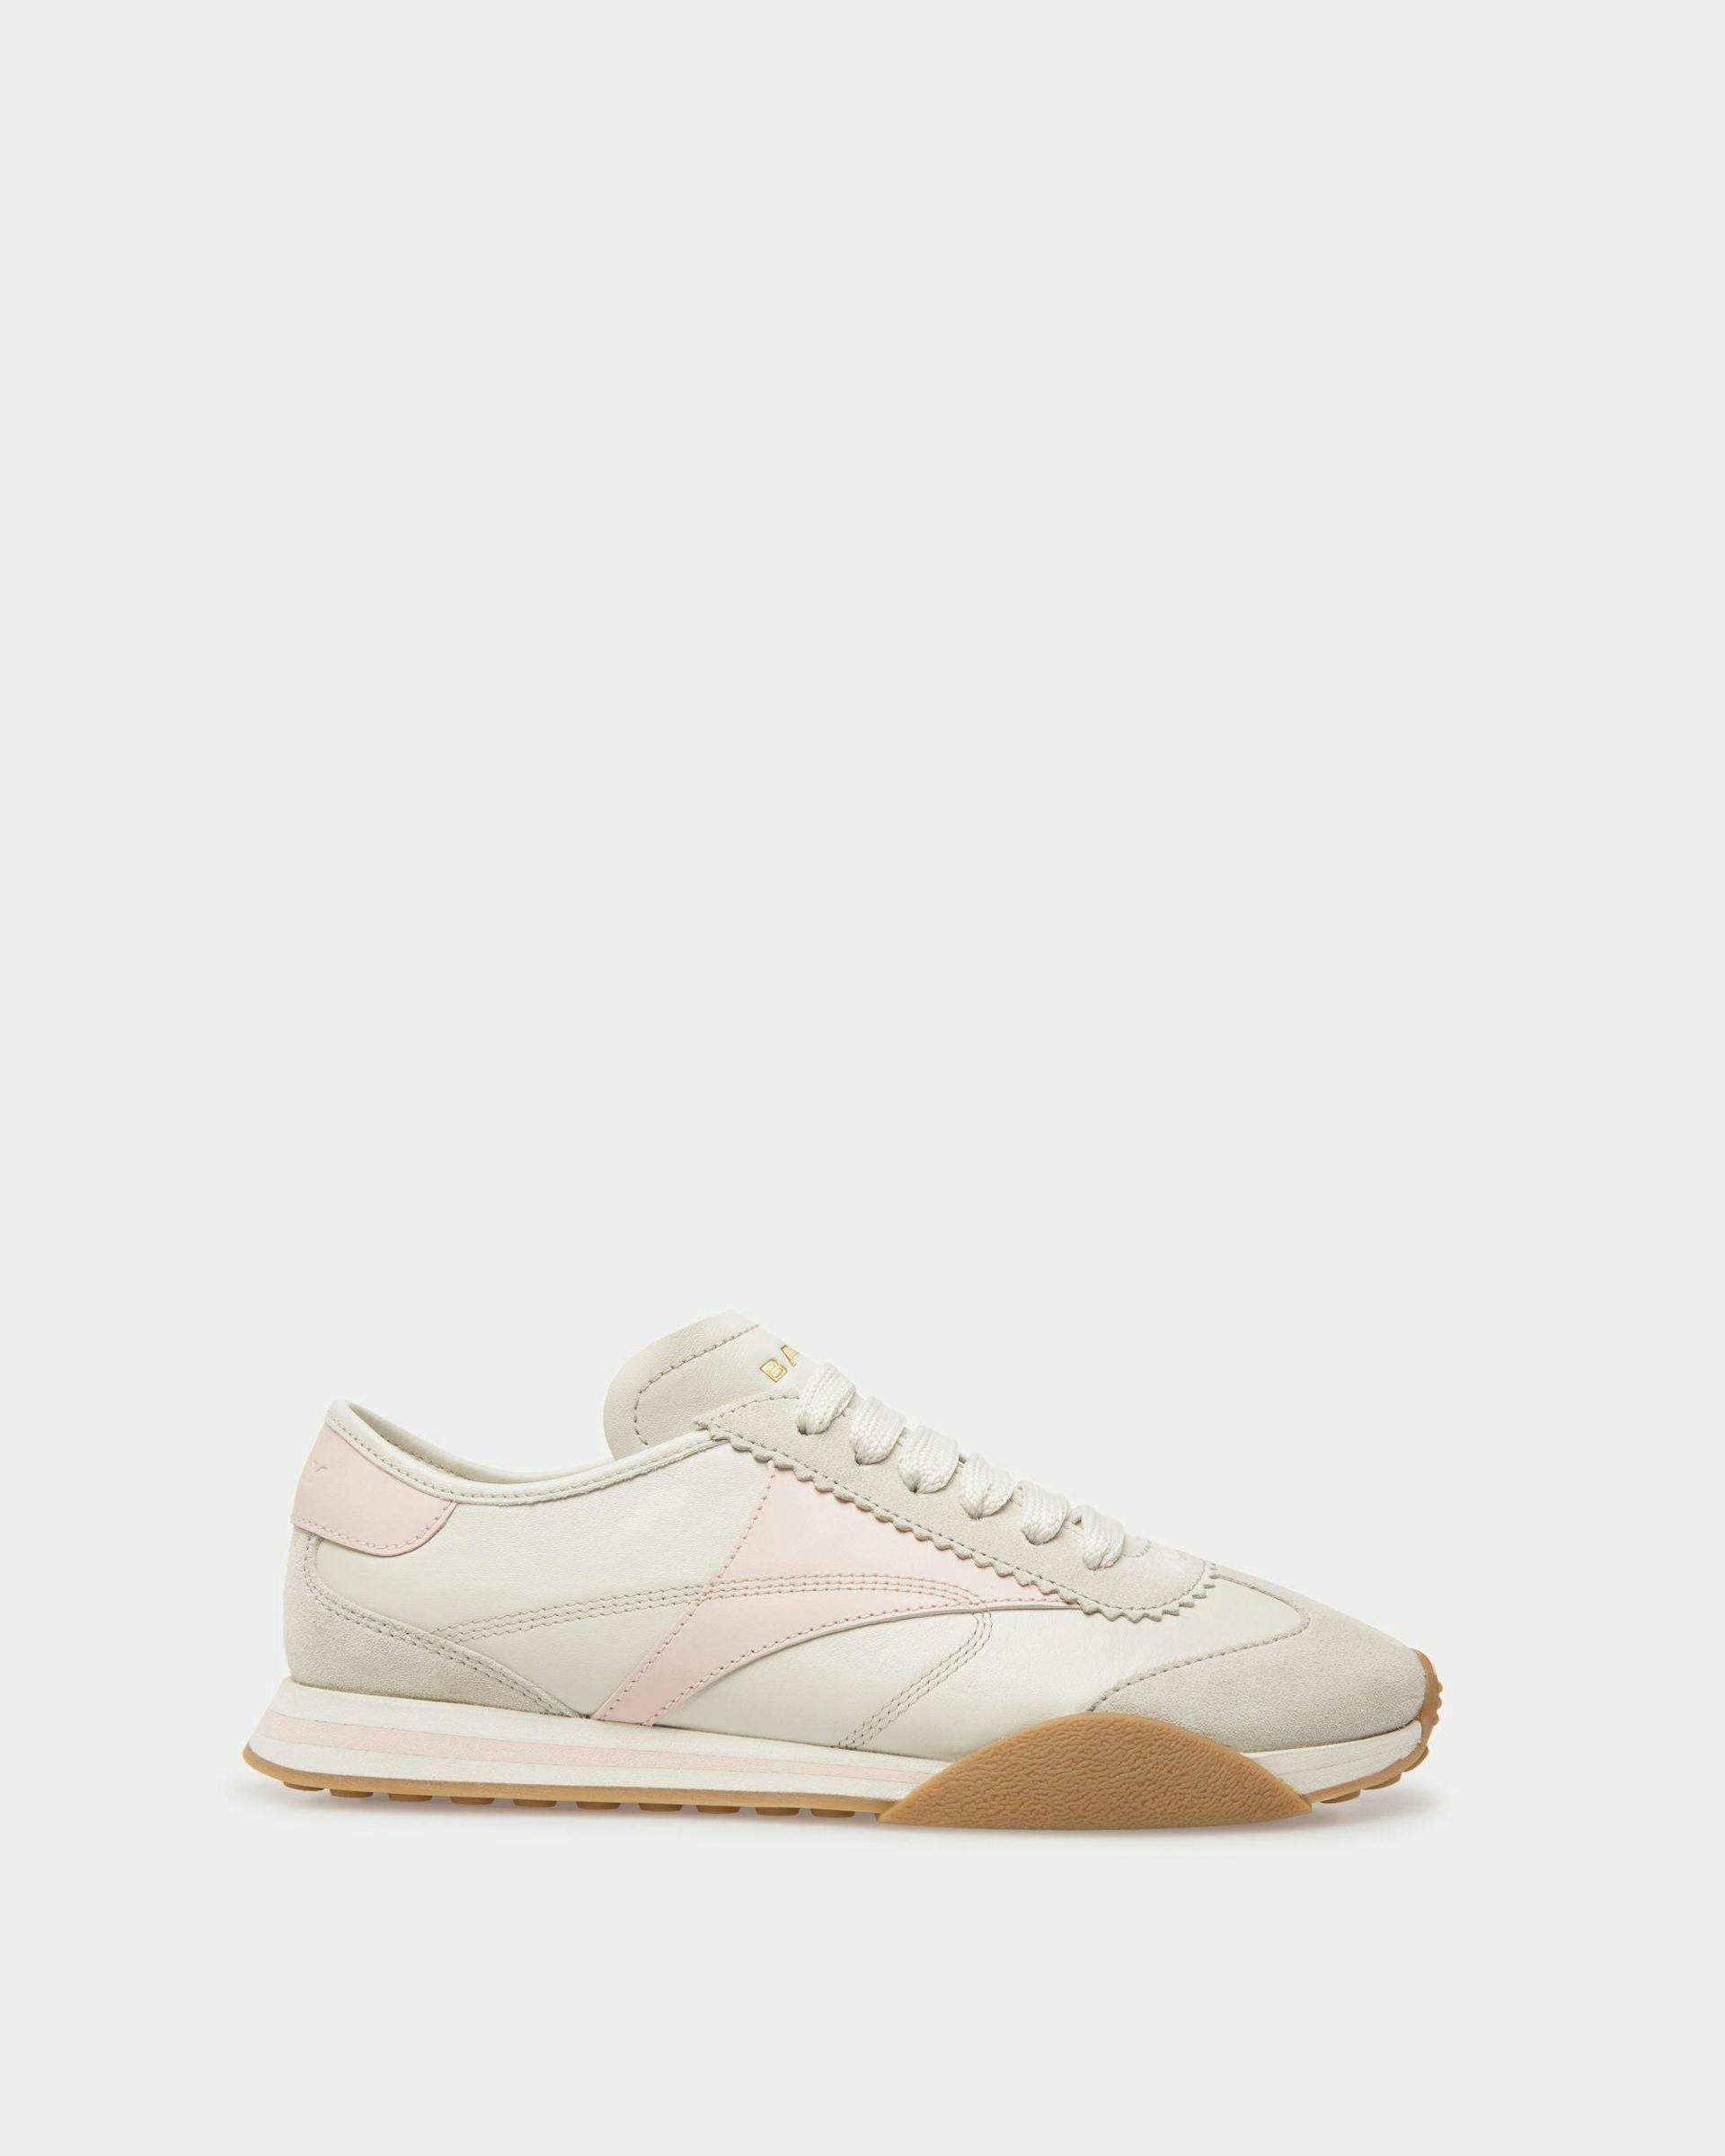 Sneakers Sussex En cuir blanc poussière et rose - Femme - Bally - 01